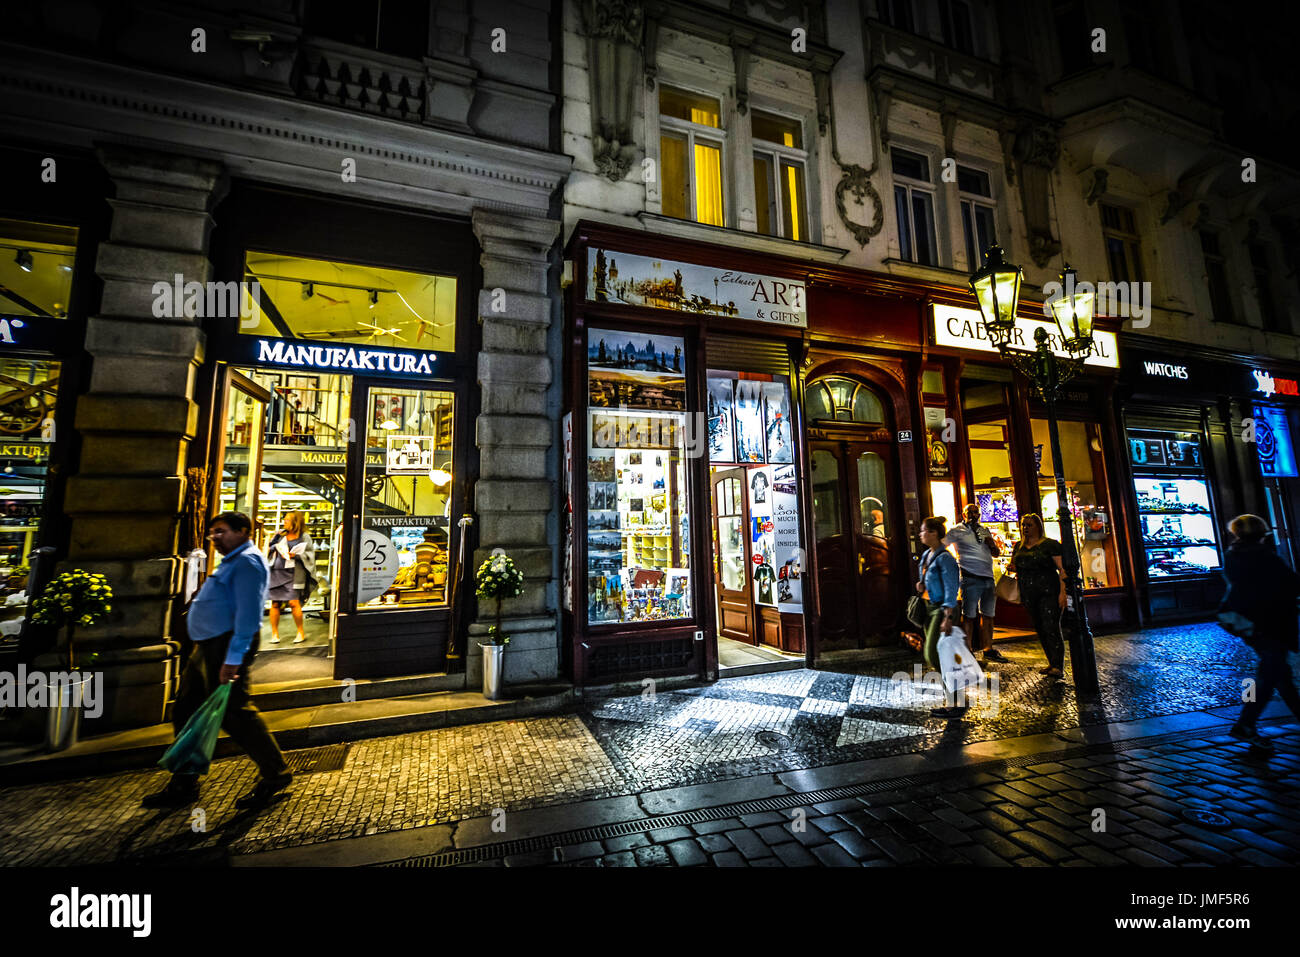 Käufer und Touristen gehen für einige Abend einkaufen in der Praha Bezirk von Prag. Die Geschäfte sind gut beleuchtet, mit stimmungsvoller Beleuchtung Stockfoto